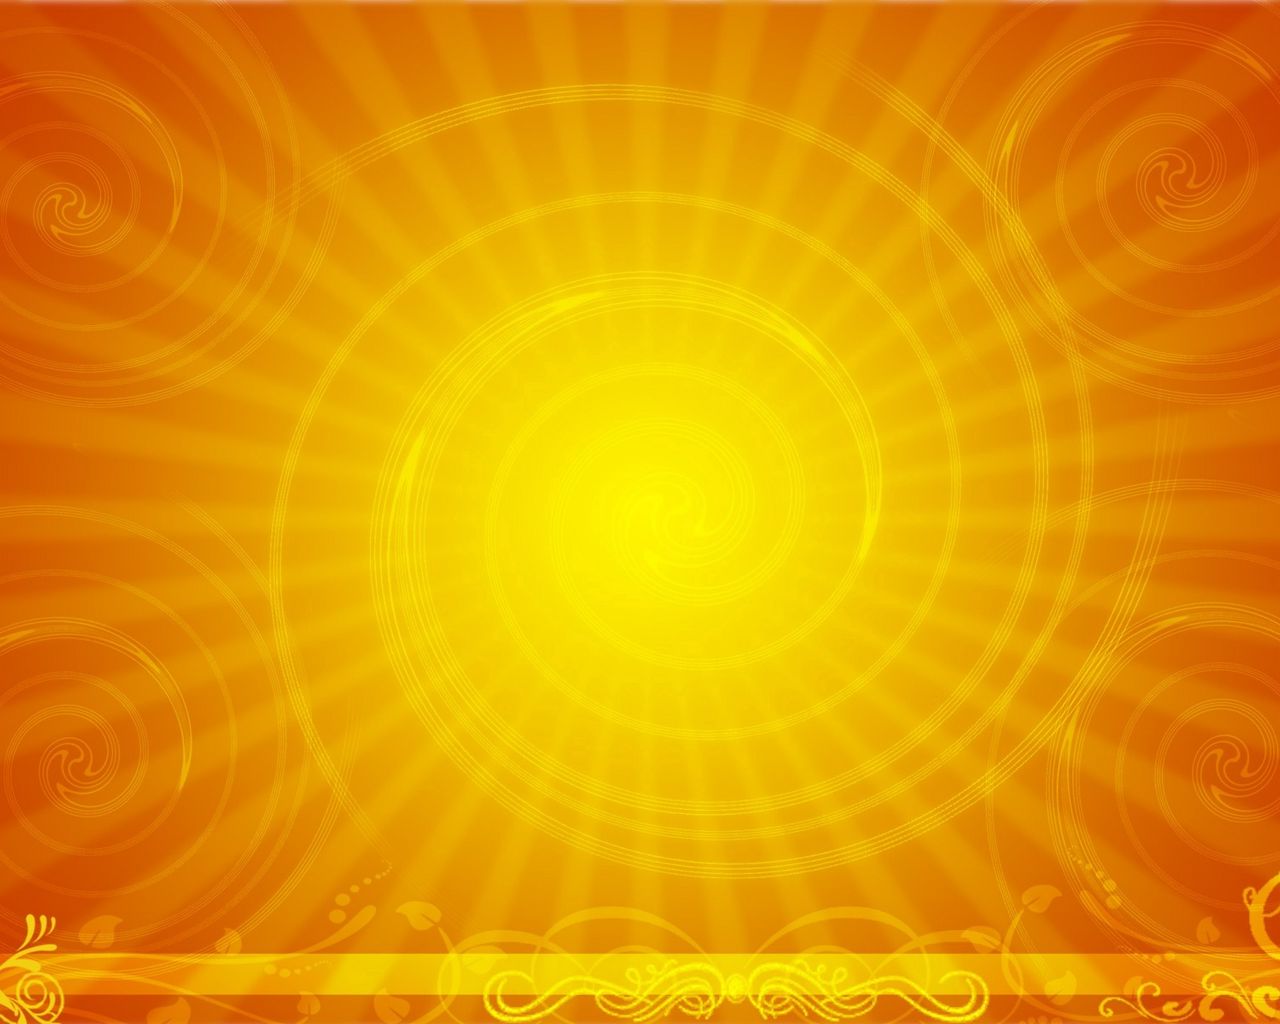 Download wallpaper 1280x1024 spiral, sun, line, light standard 5:4 hd  background